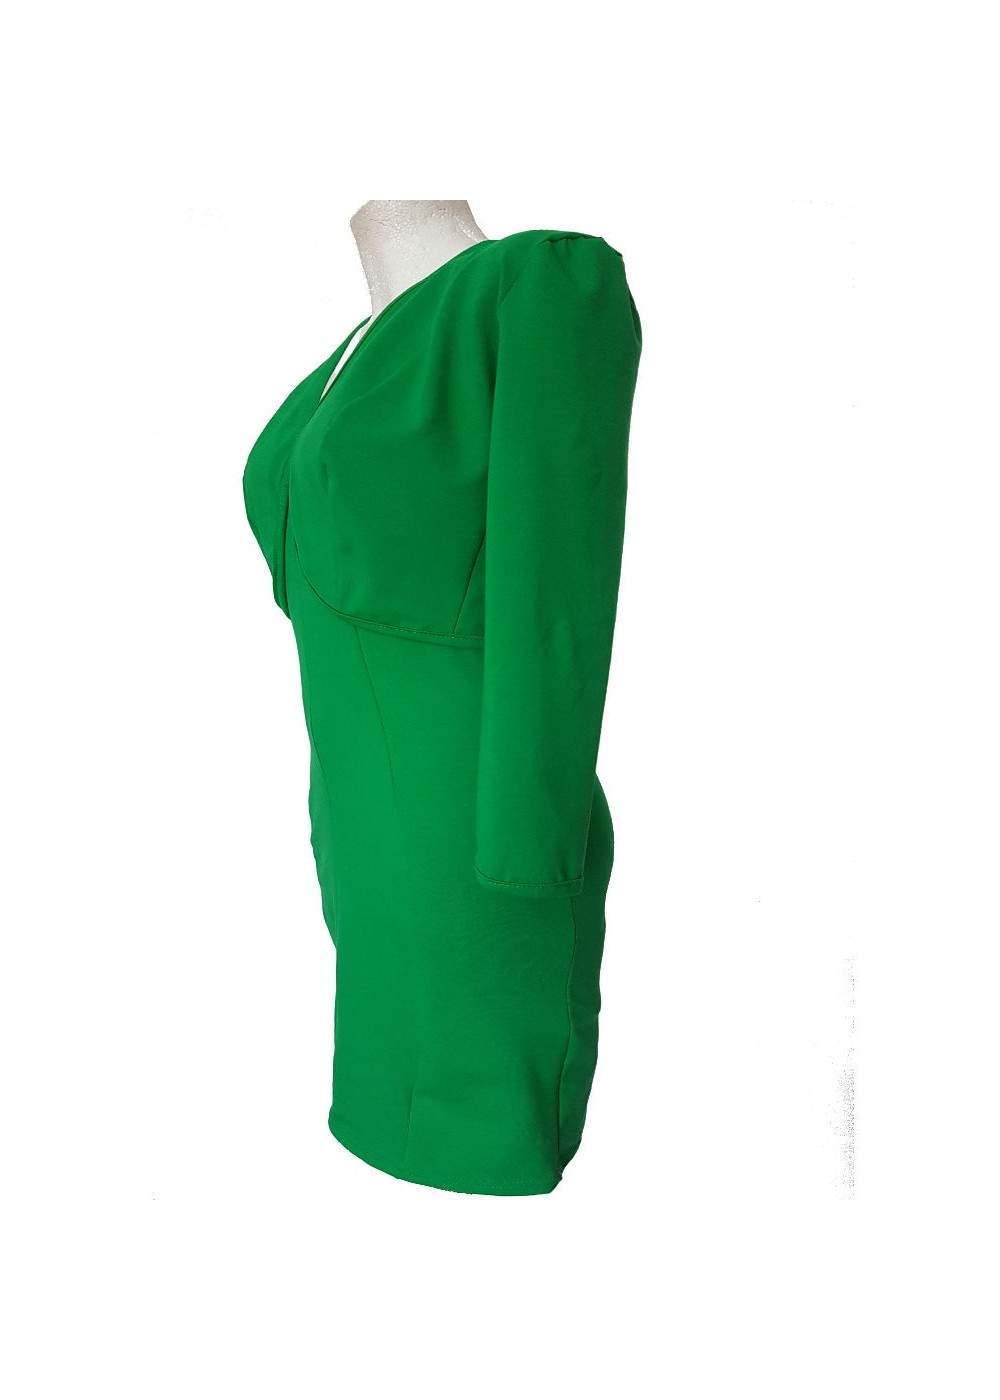 Traje verde de dos piezas Chaqueta corta y vestido de cóctel Algodó... - 